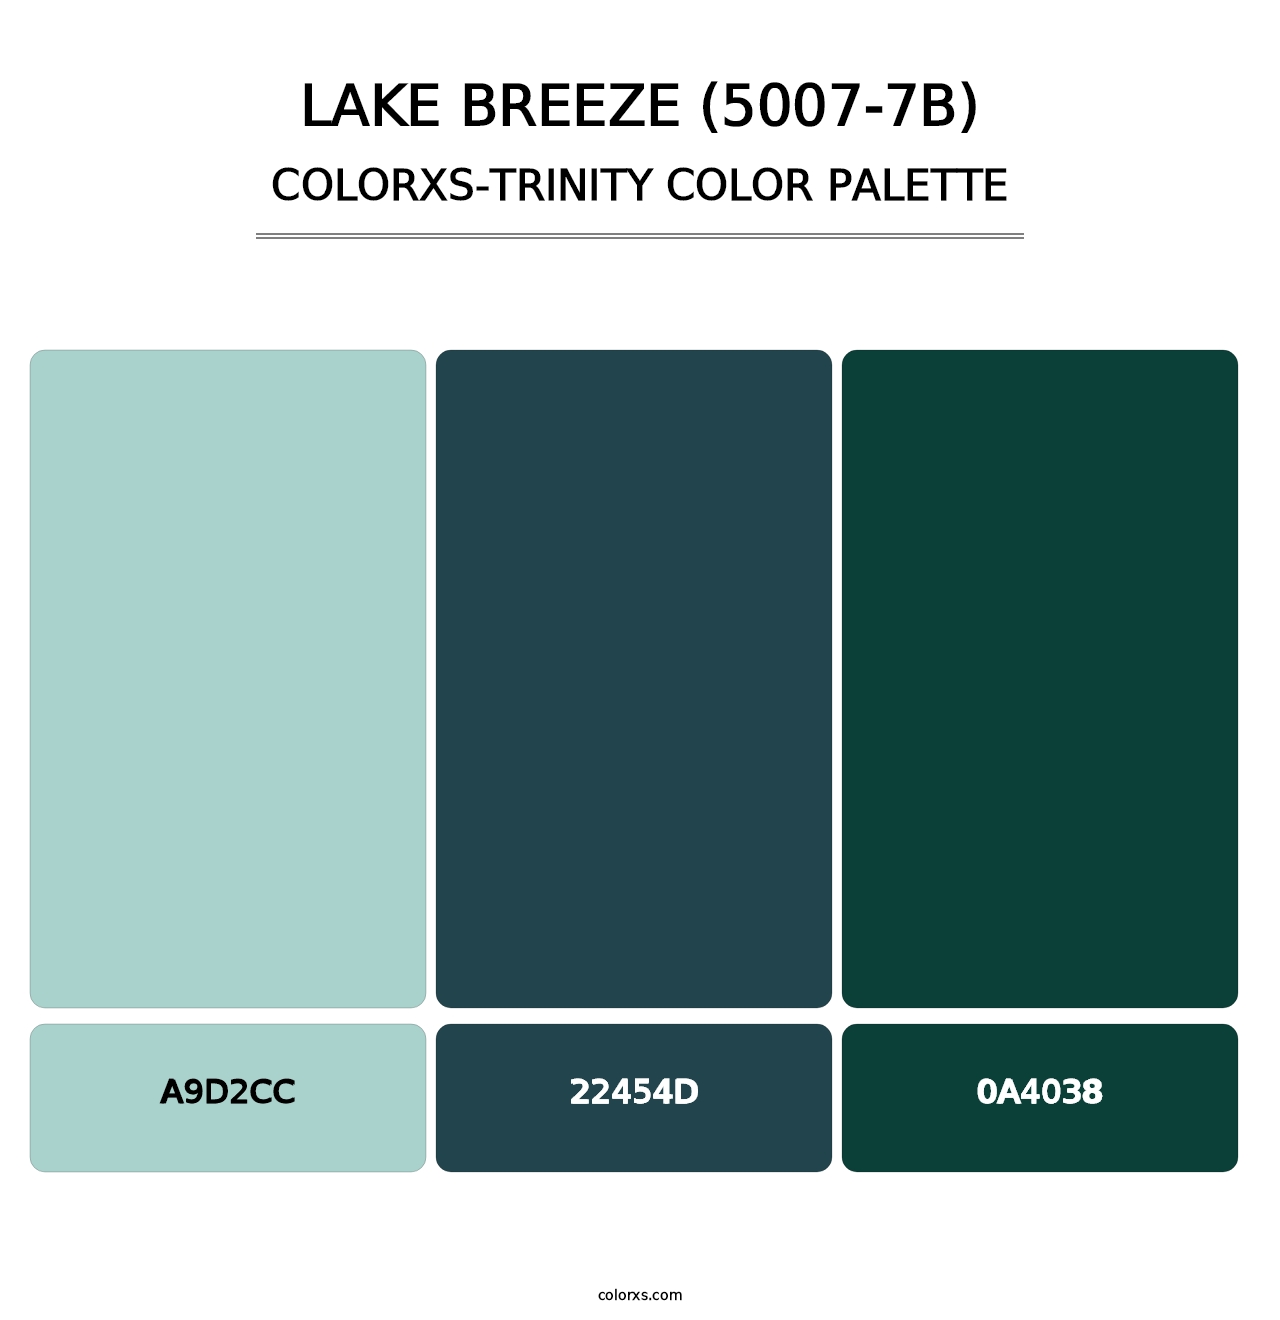 Lake Breeze (5007-7B) - Colorxs Trinity Palette